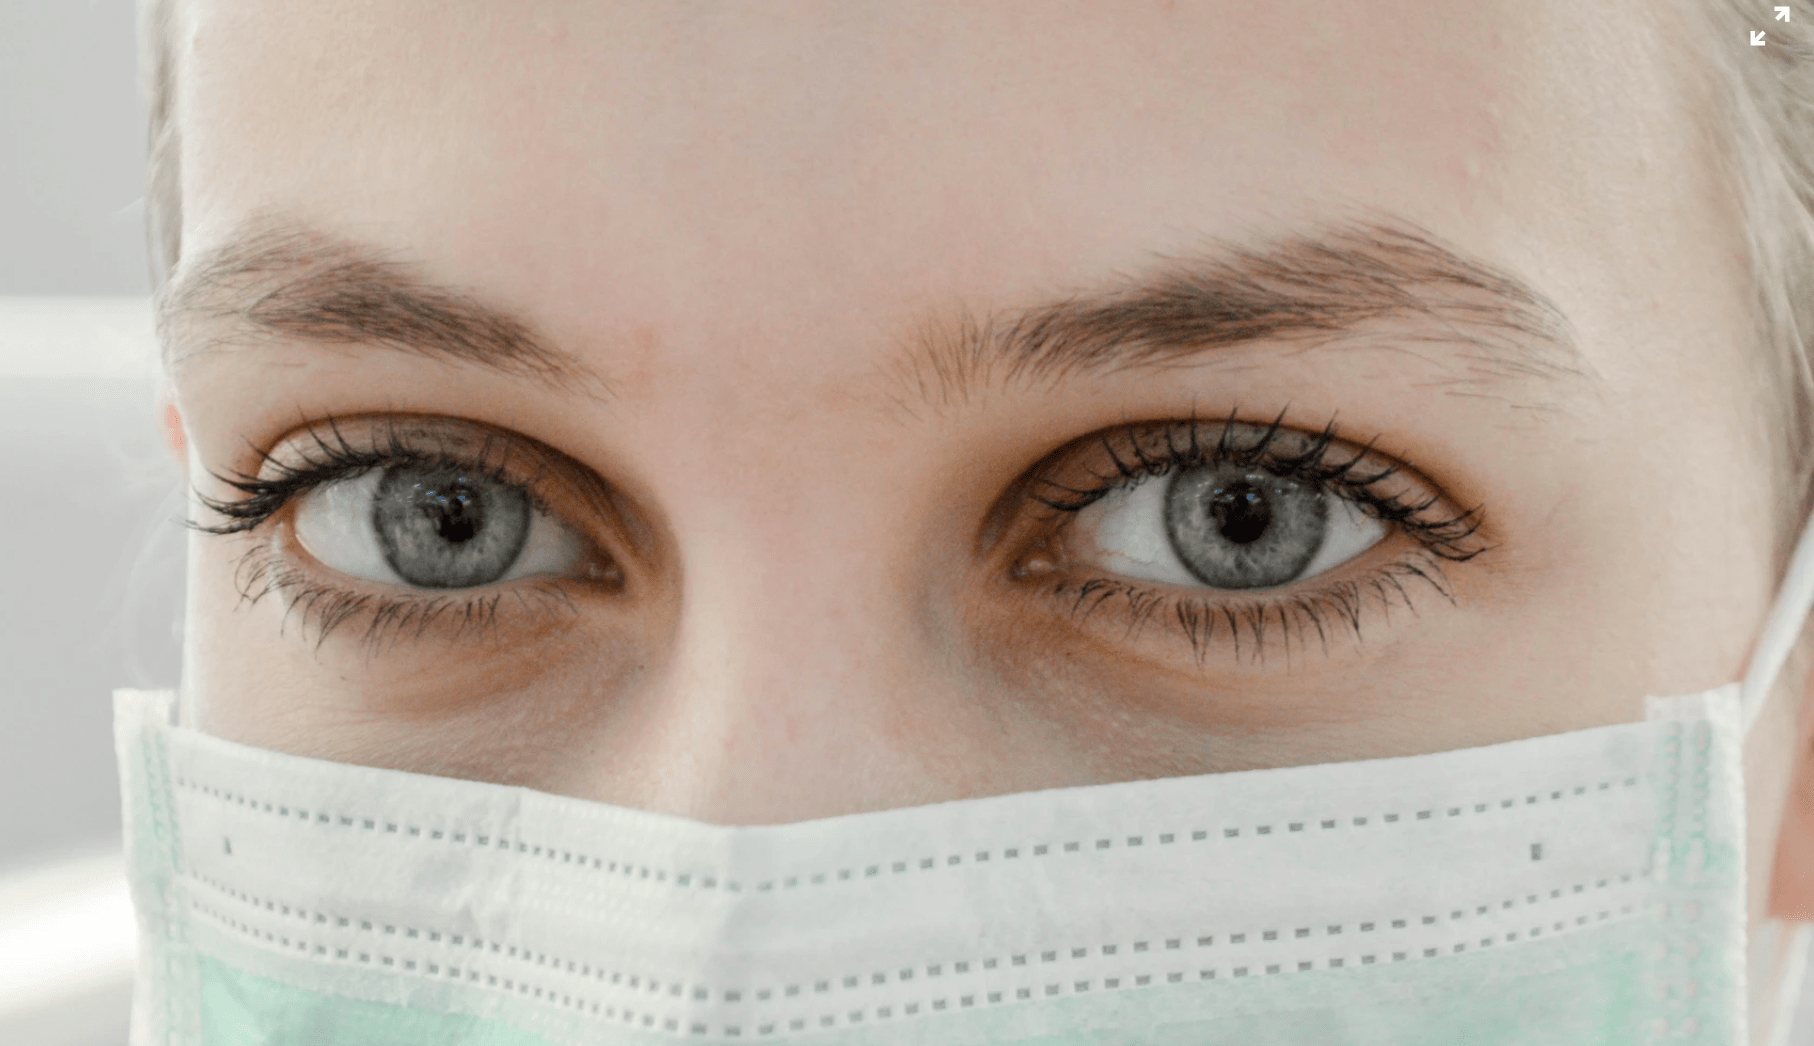 Cientistas encontram tecido no olho humano que parece resistente ao SARS-CoV-2